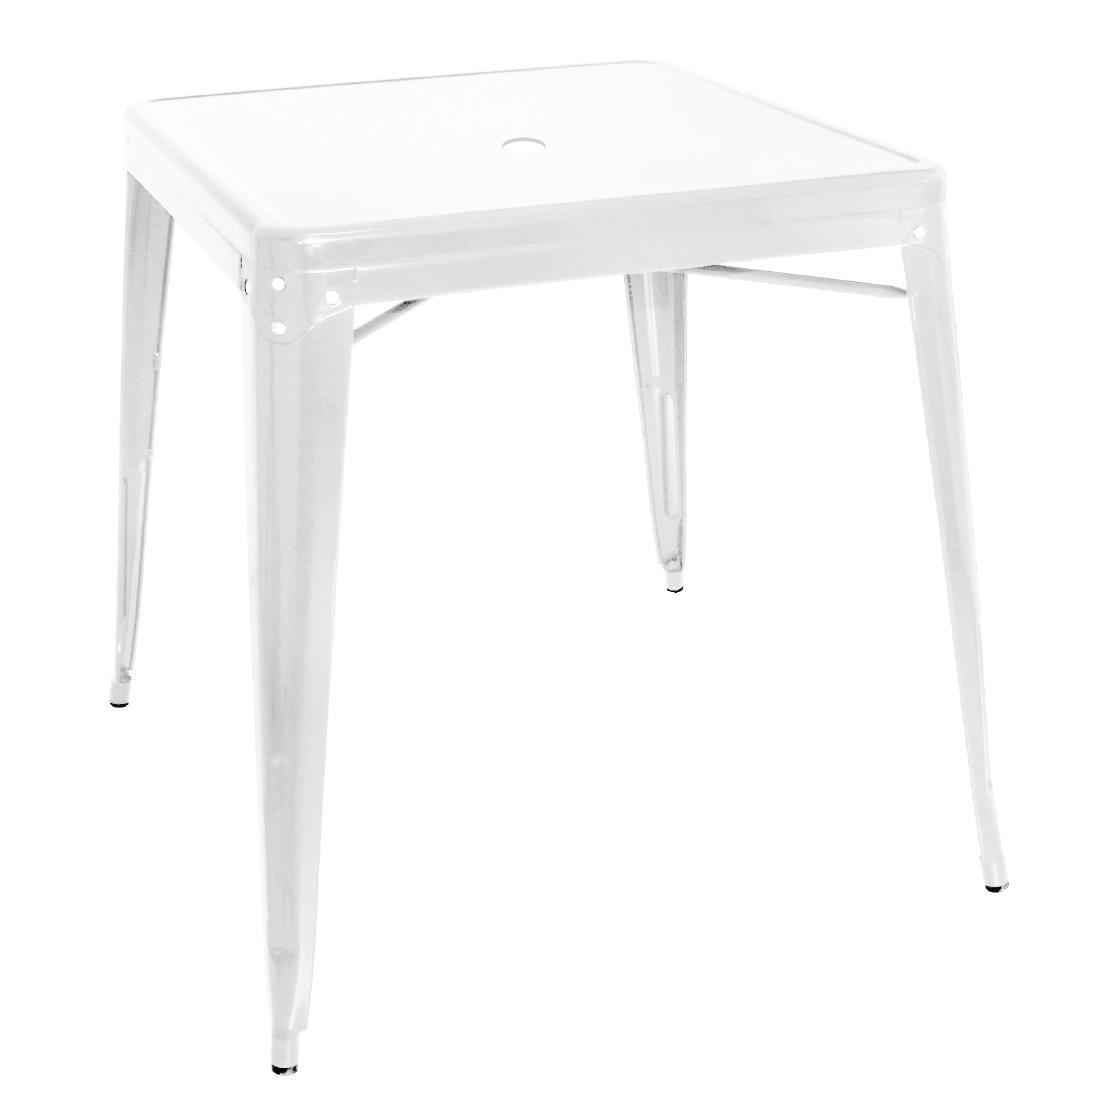 Bolero Bistro Square Steel Table White 668mm (Single) - GC869  - 1